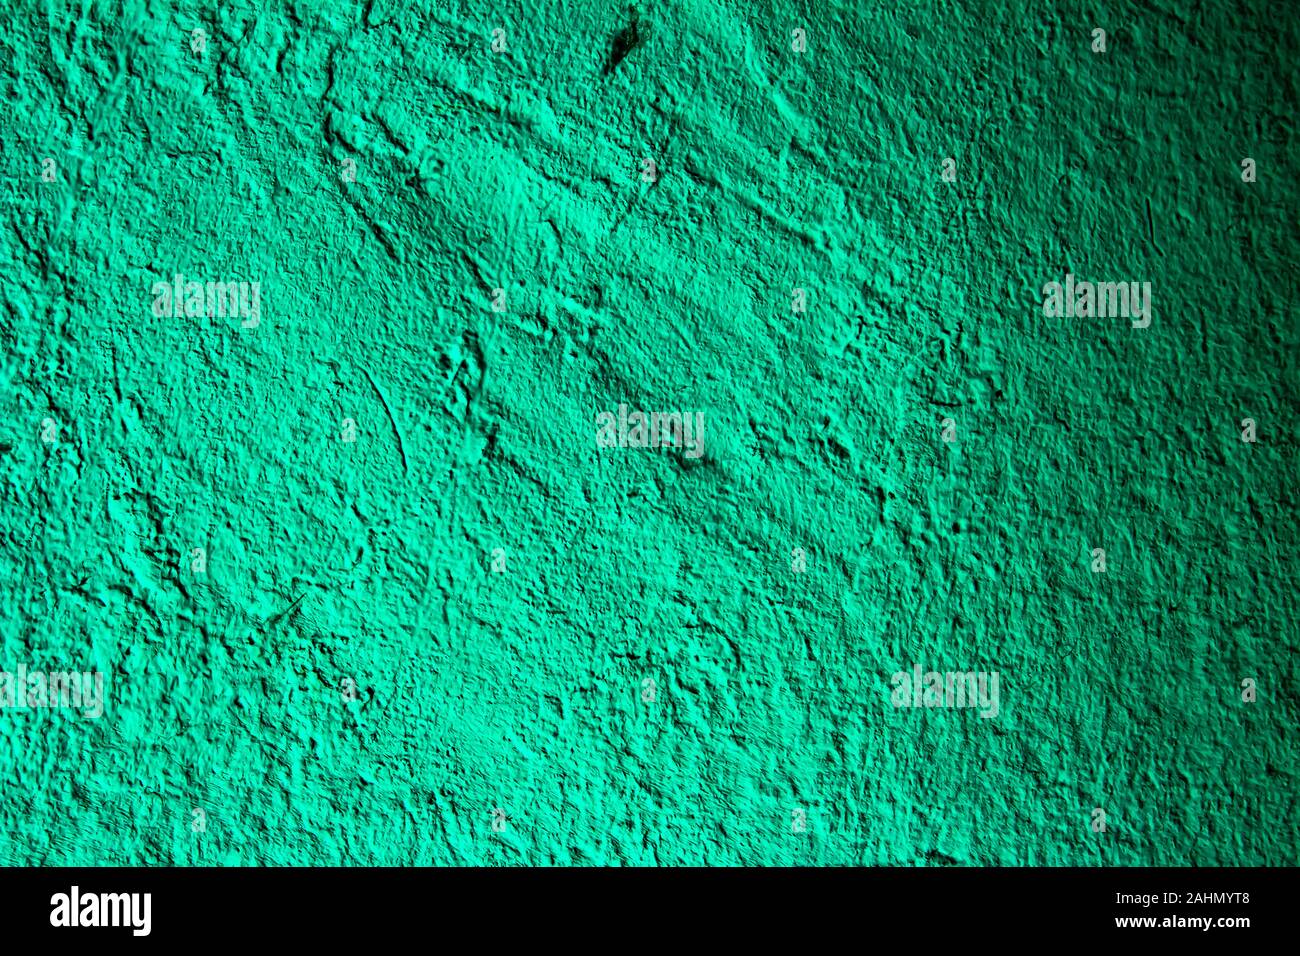 Verde acquamarina immagini e fotografie stock ad alta risoluzione - Alamy